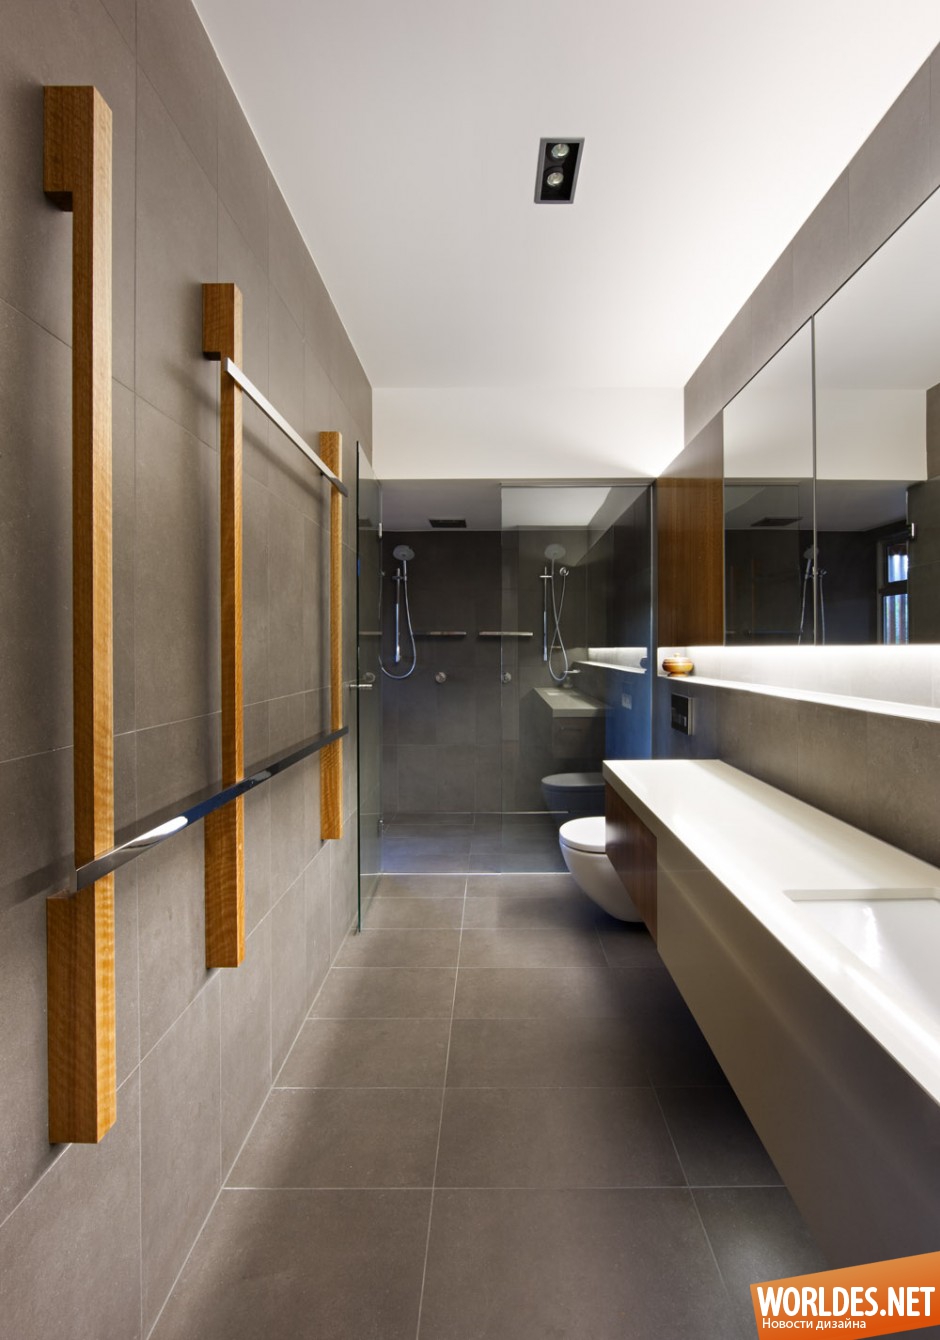 современные ванные комнаты, современная ванная комната фото, фото современной ванной комнаты, современный дизайн ванной комнаты, современная ванная комната дизайн, современные ванные комнаты дизайн фото, ванная комната в современном стиле